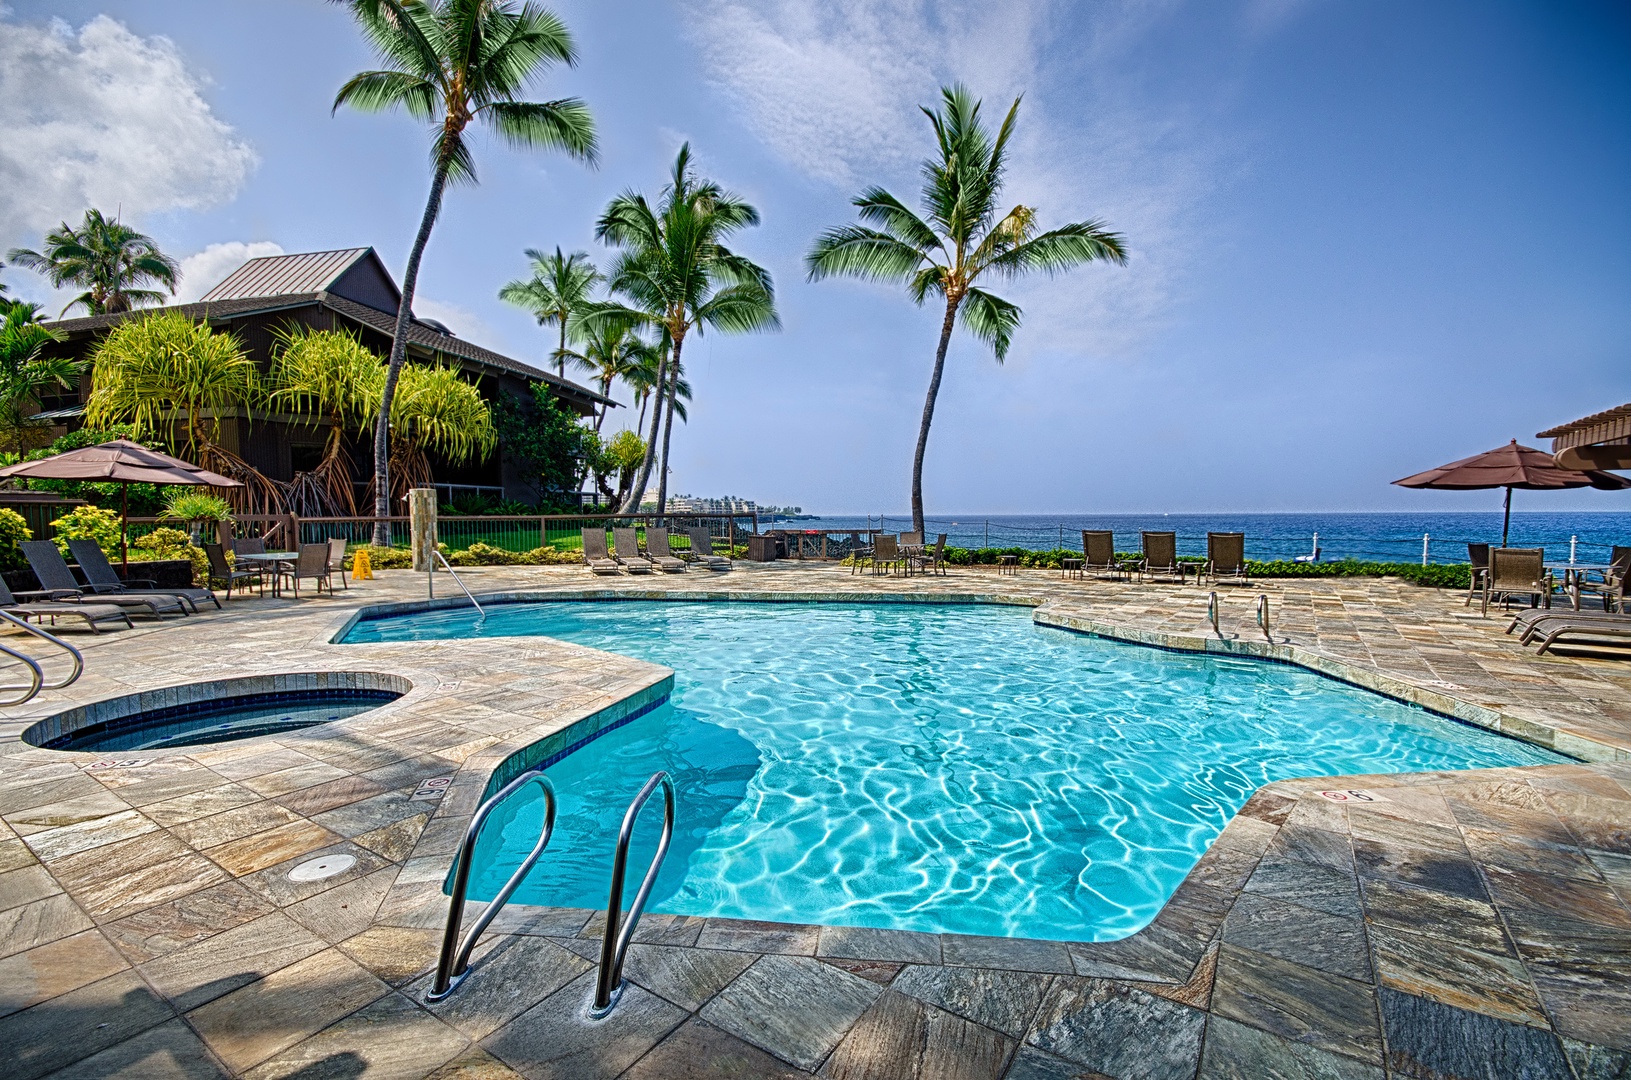 Kailua Kona Vacation Rentals, Kanaloa 701 - Pool with hot tub 100 feet from the condo!